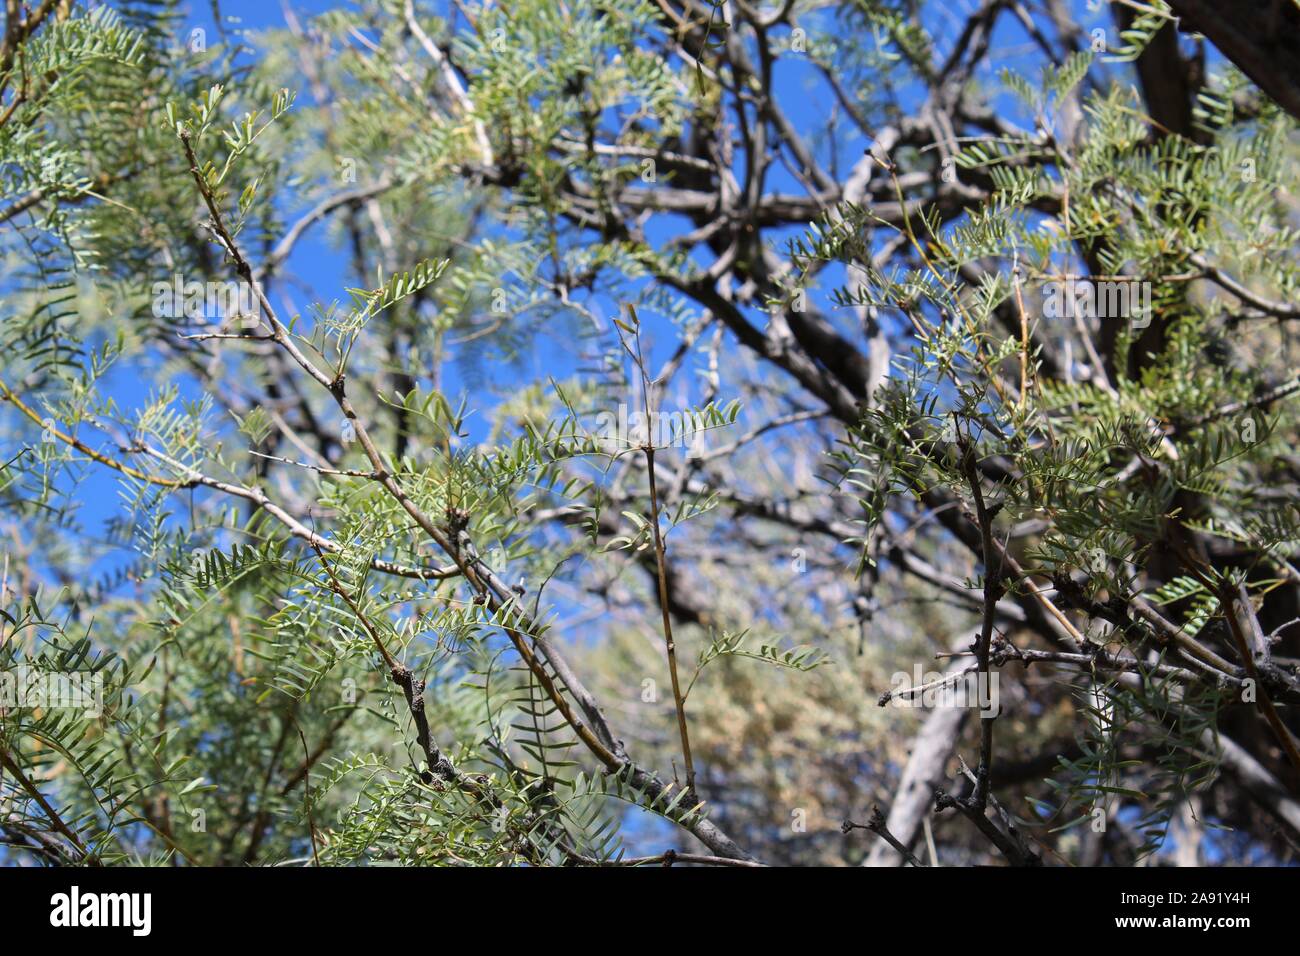 Souvent le miel Mesquite, Prosopis Glandulosa botaniquement, plante indigène au printemps Cottonwood dans le désert du Colorado de Joshua Tree National Park. Banque D'Images